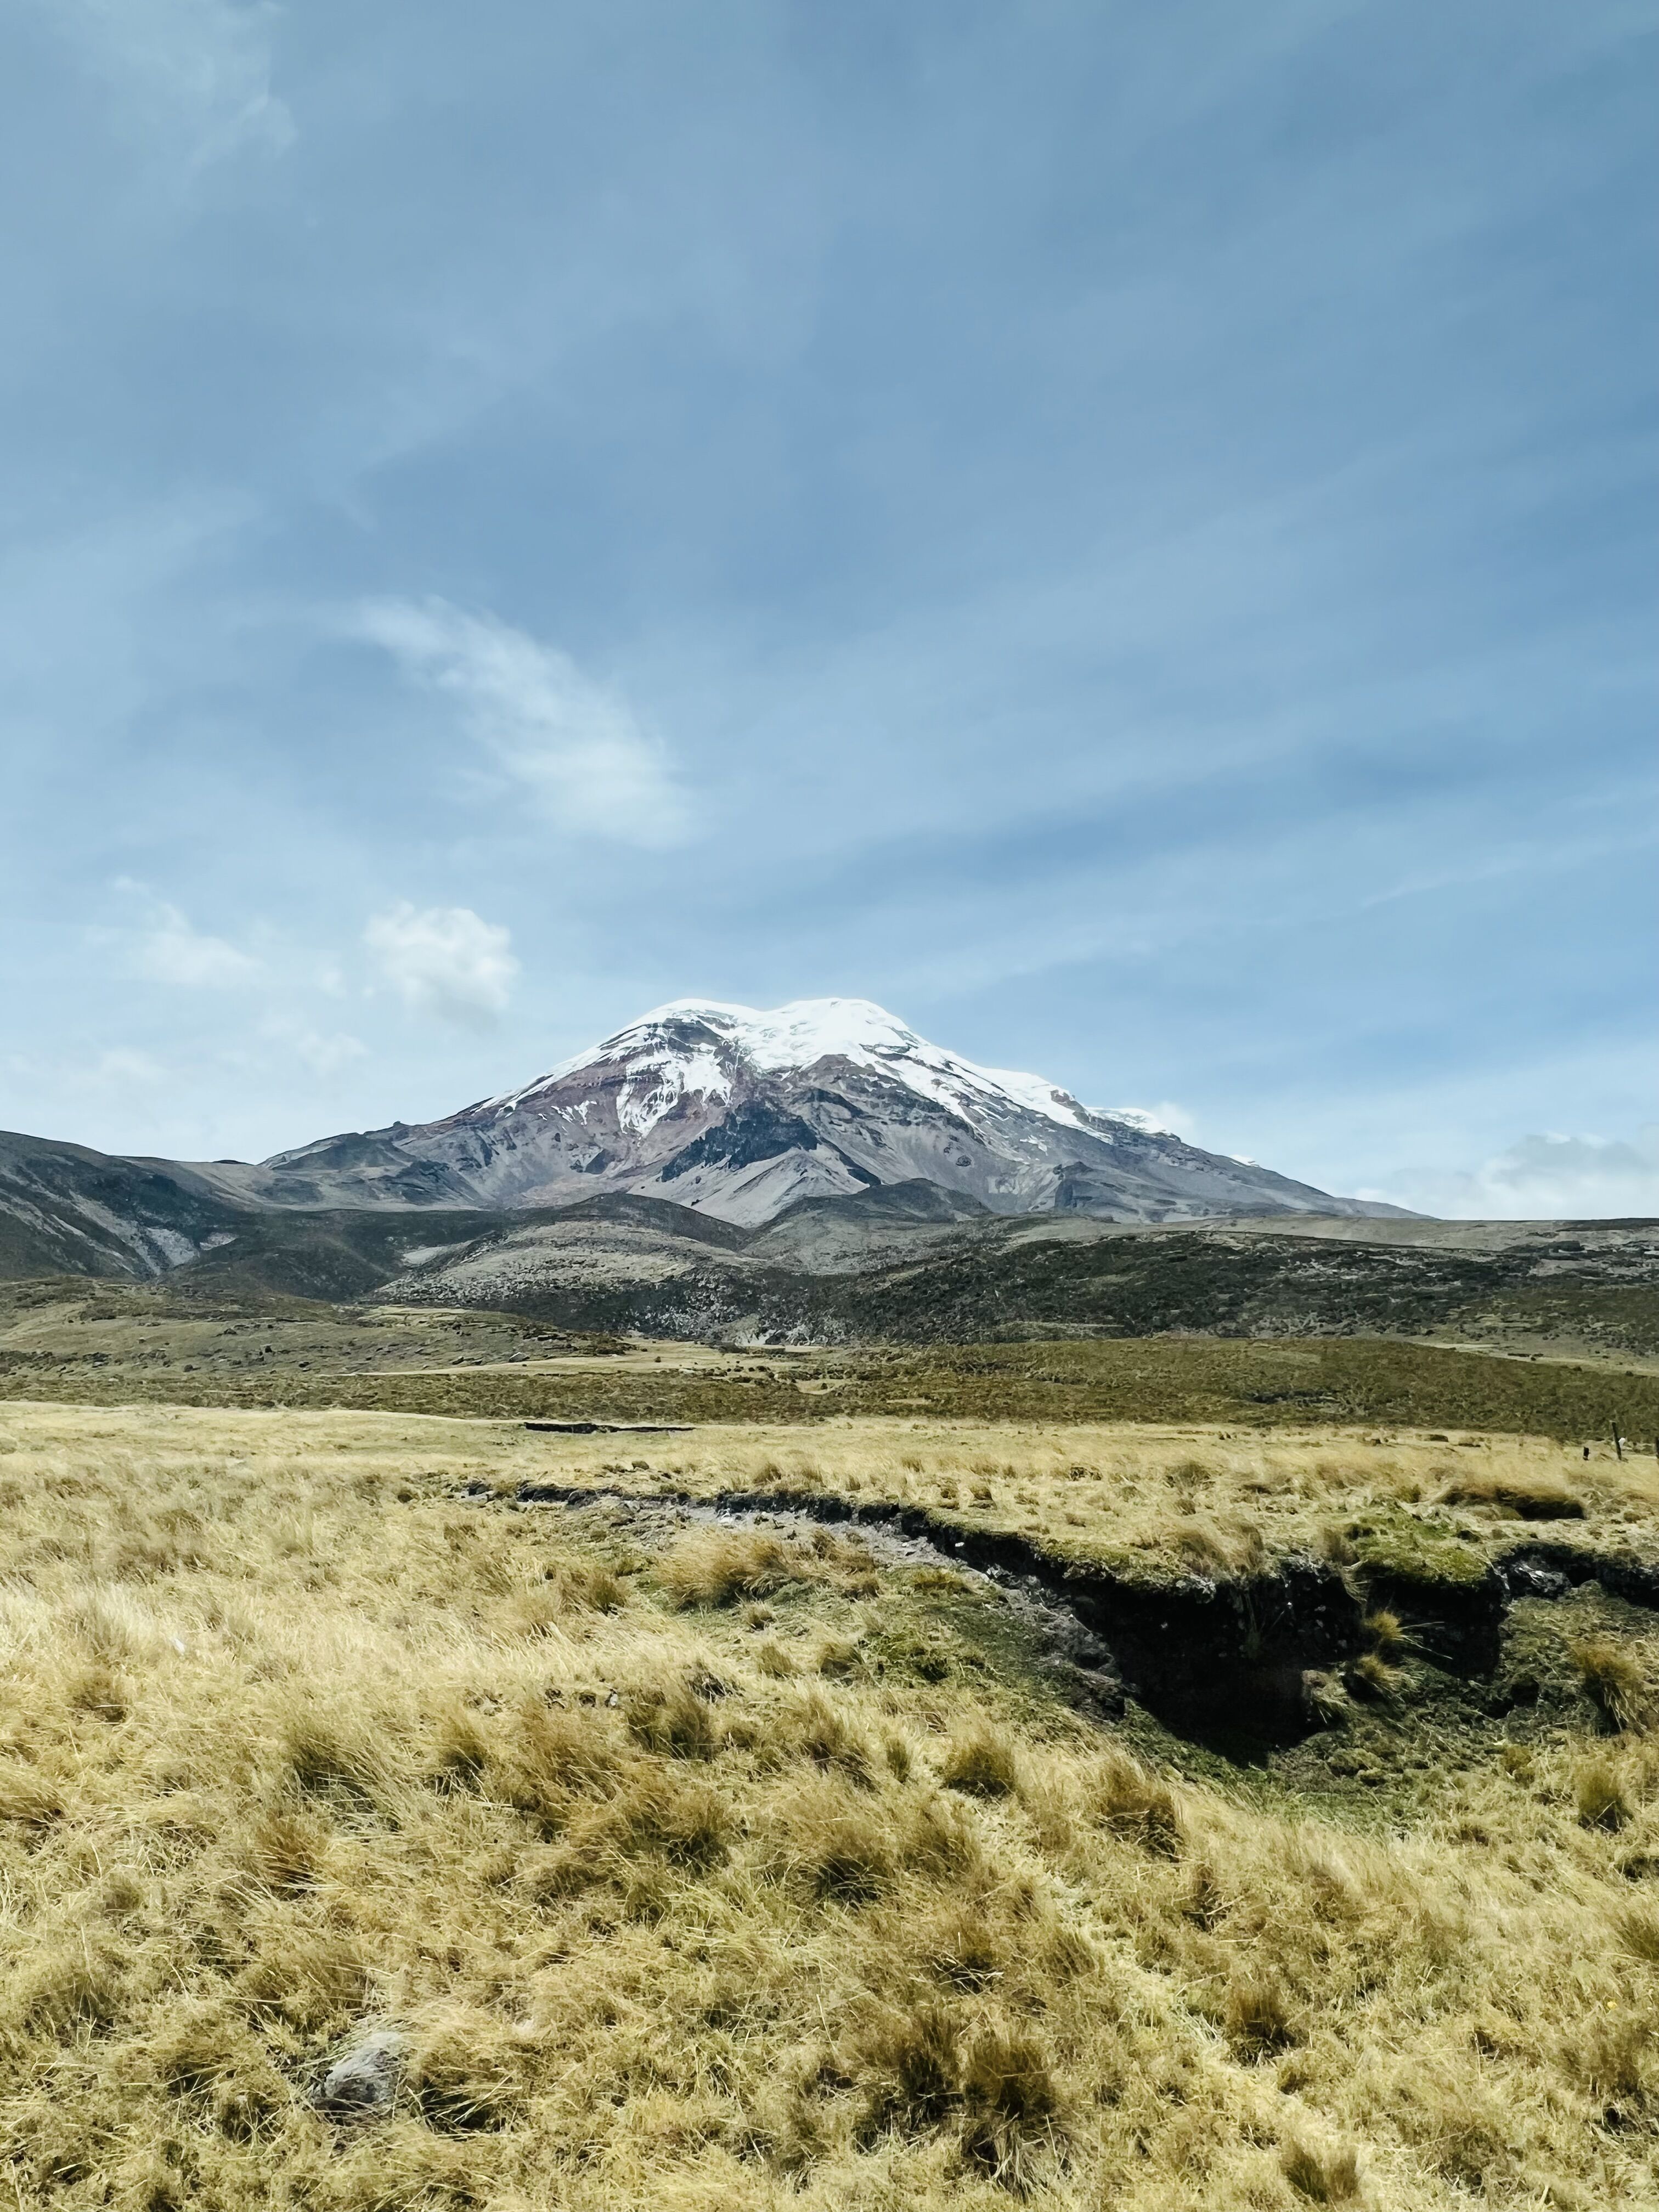 Chimborazo widziany z oddali.